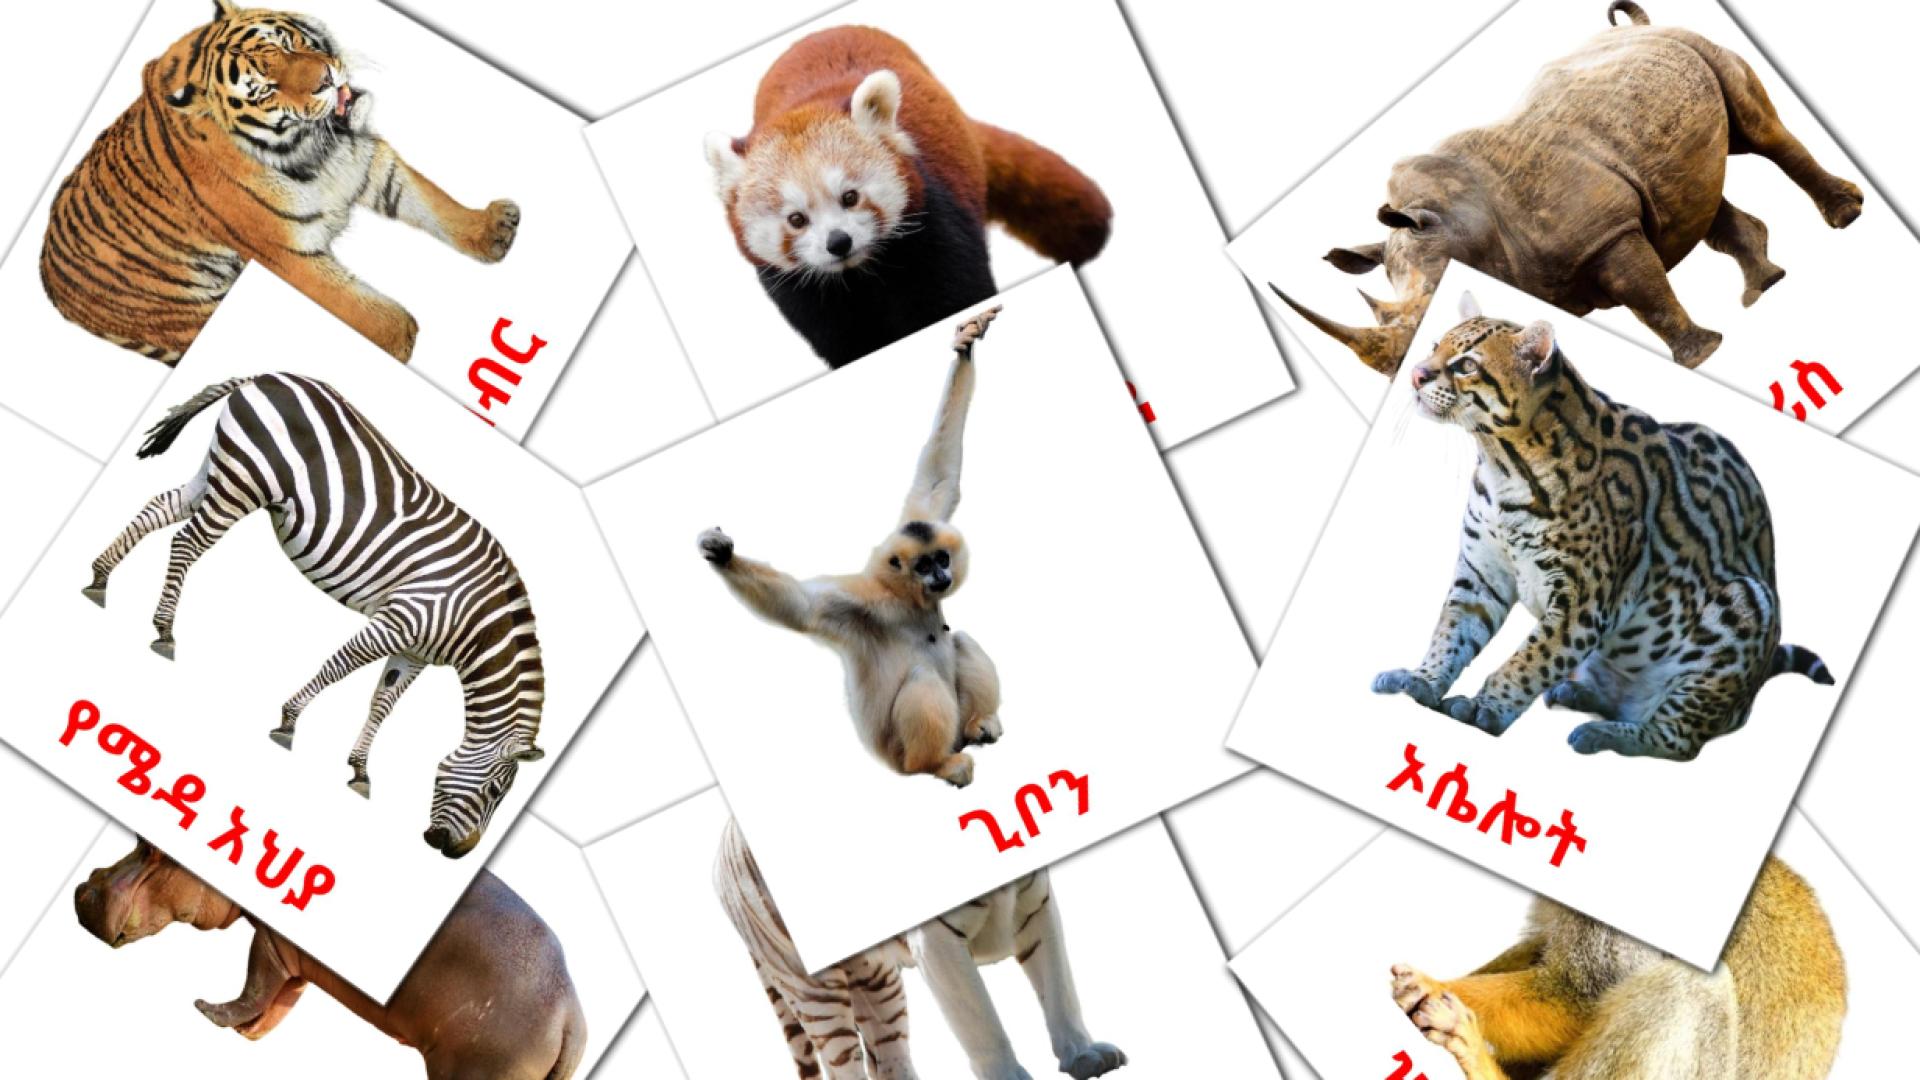 Dschungel Tiere - Amharische Vokabelkarten